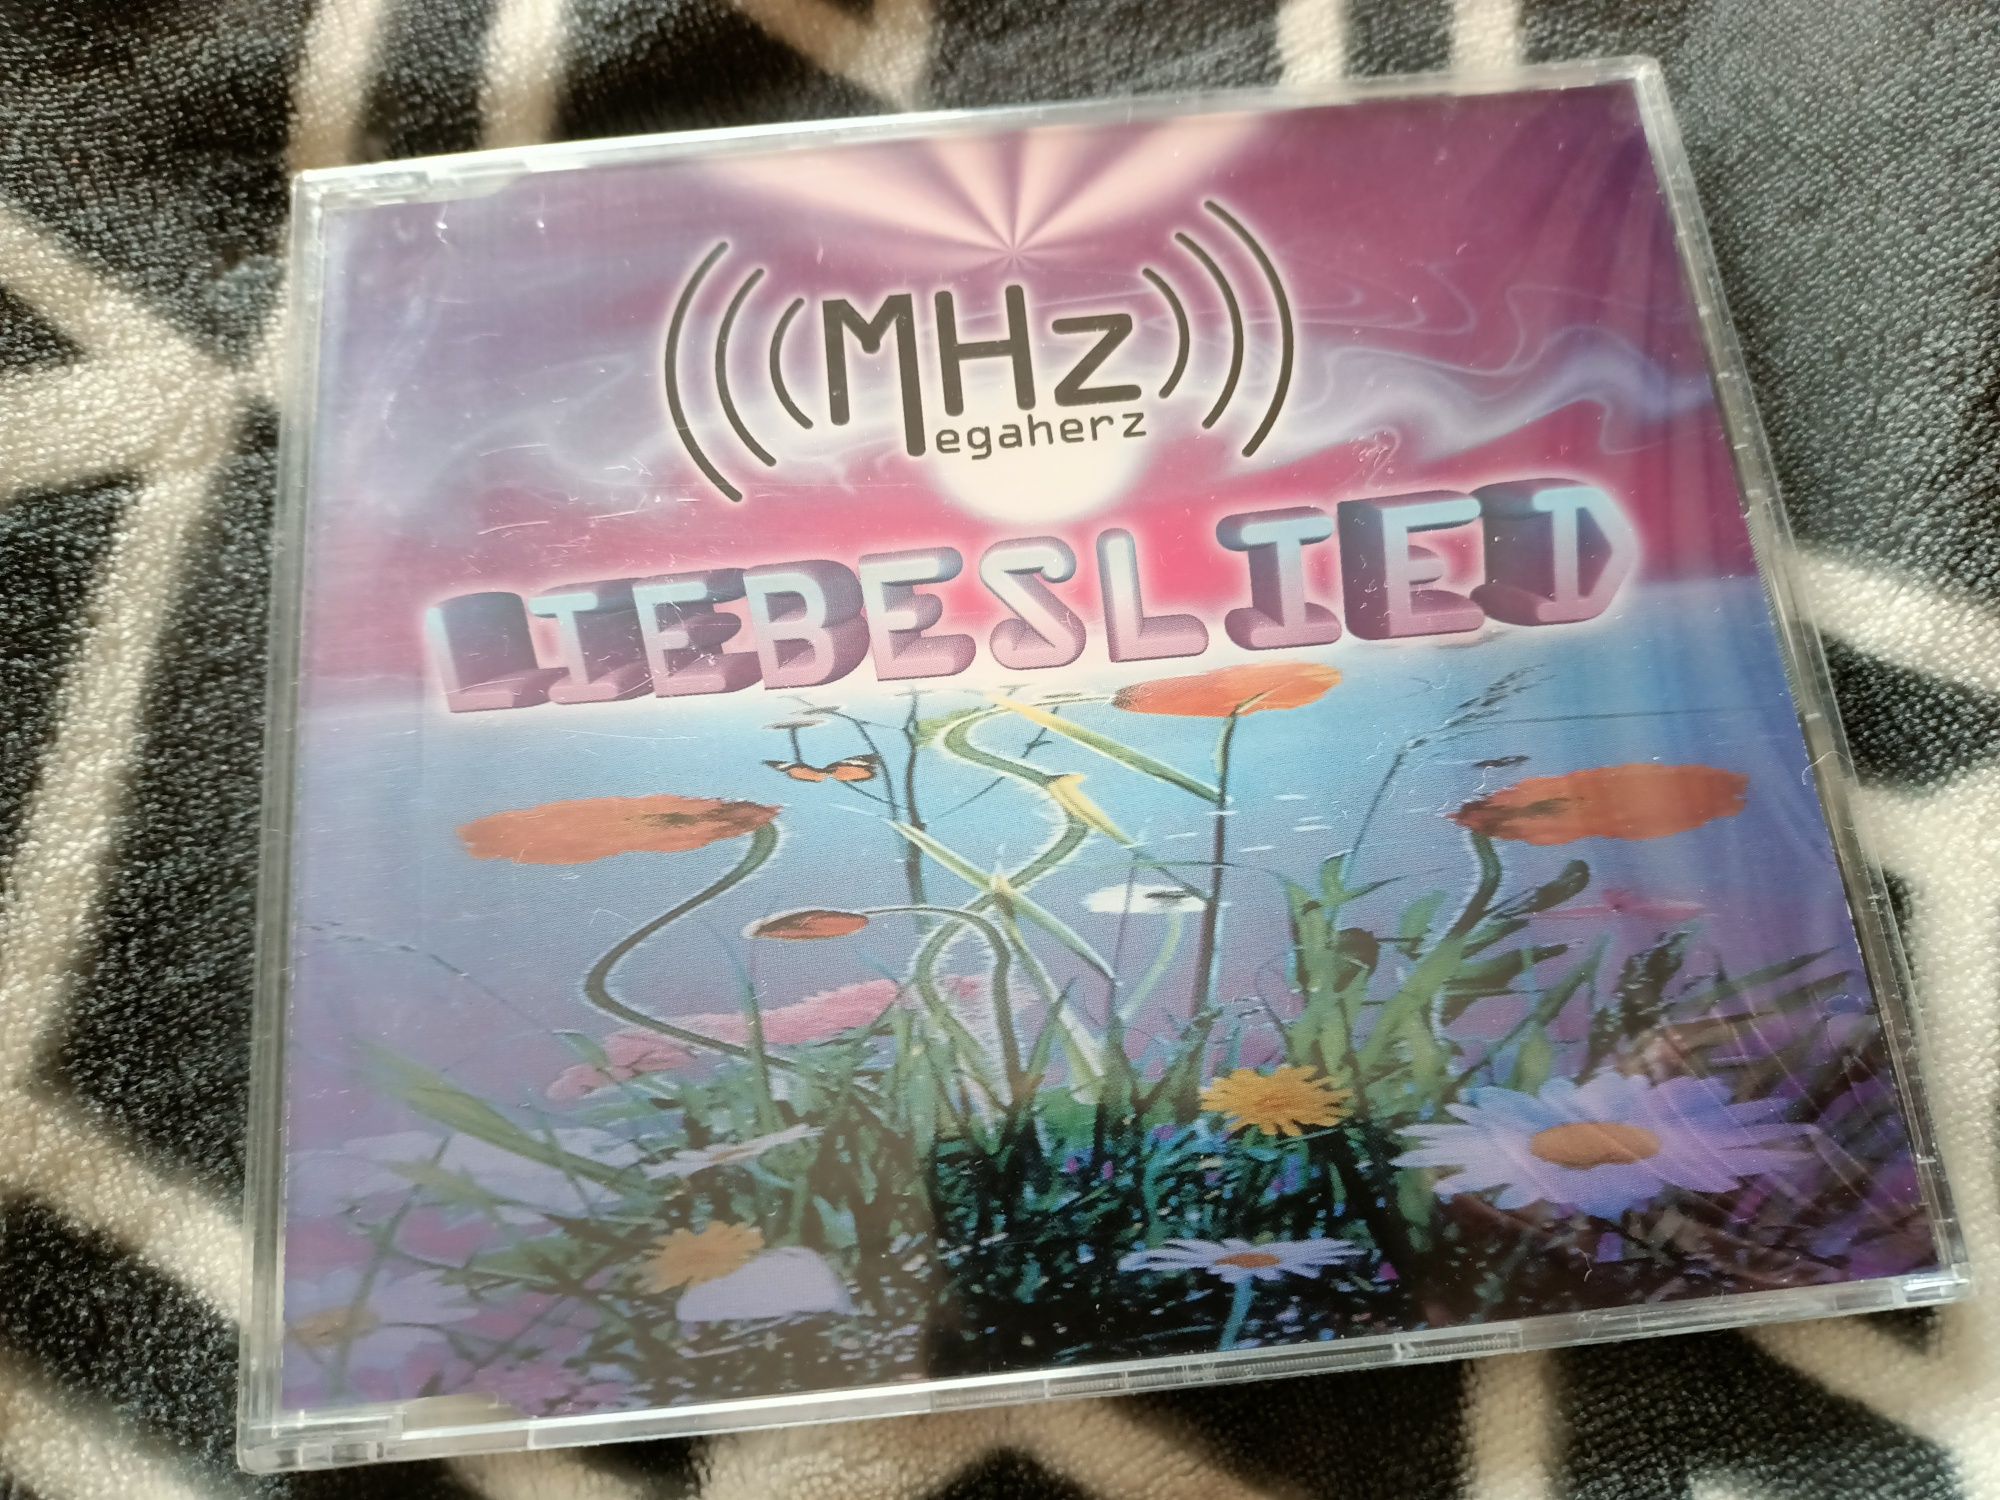 Megaherz - Liebeslied (CD, Maxi)(folia)